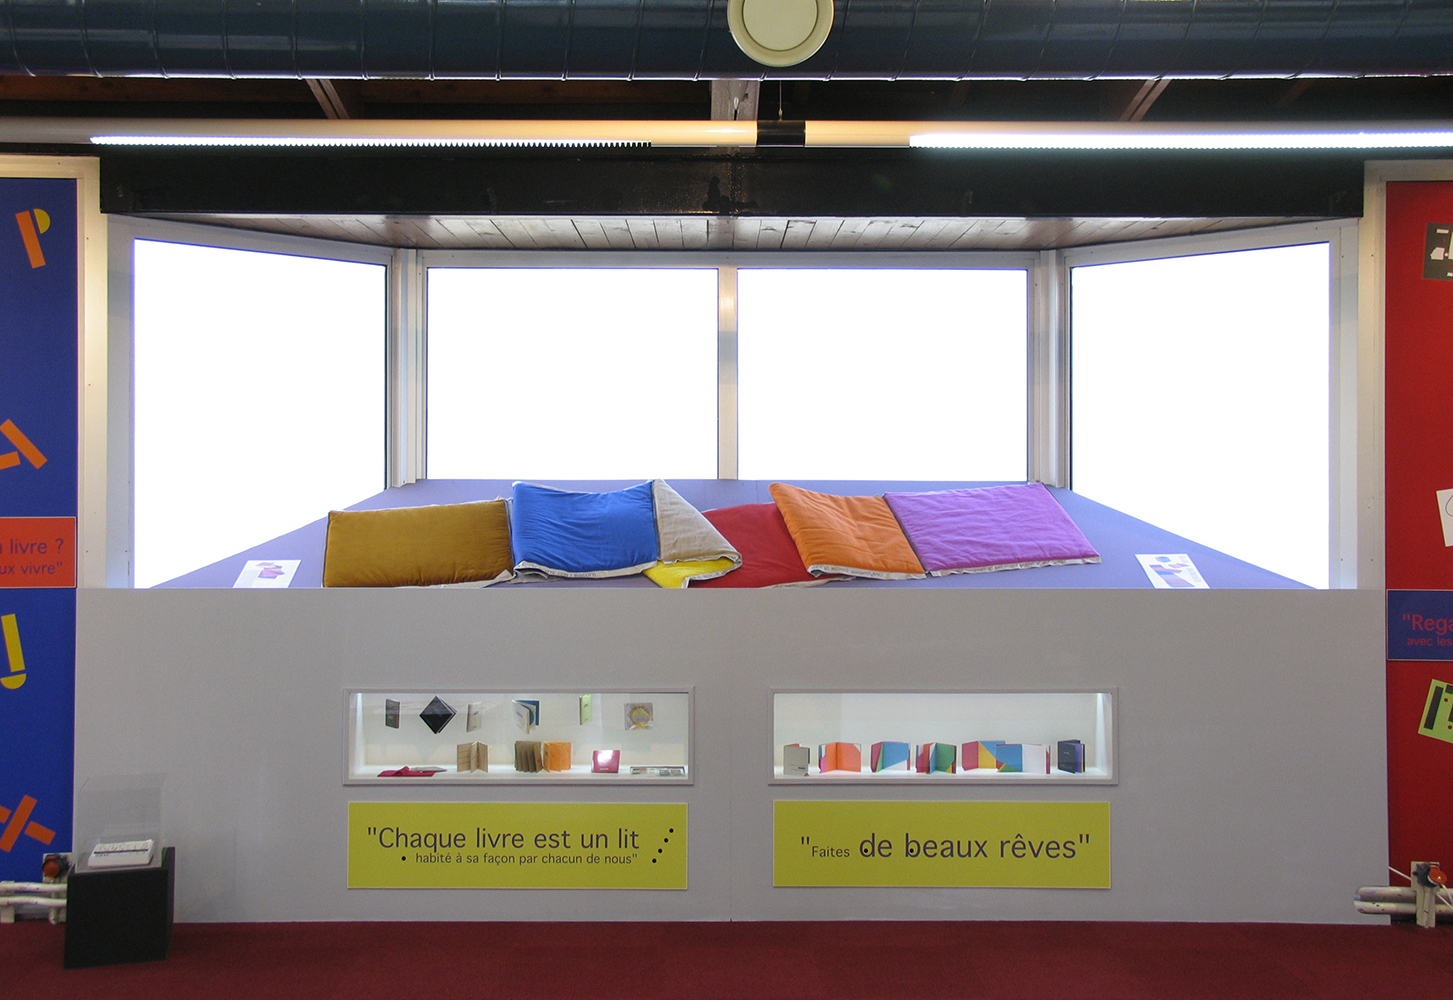 13 octobre 2007 - inauguration de l'exposition ABC D'AIR une retrospective de Bruno Munari à la bibliothèque de Pantin dans le cadre du salon du livre de Montreuil